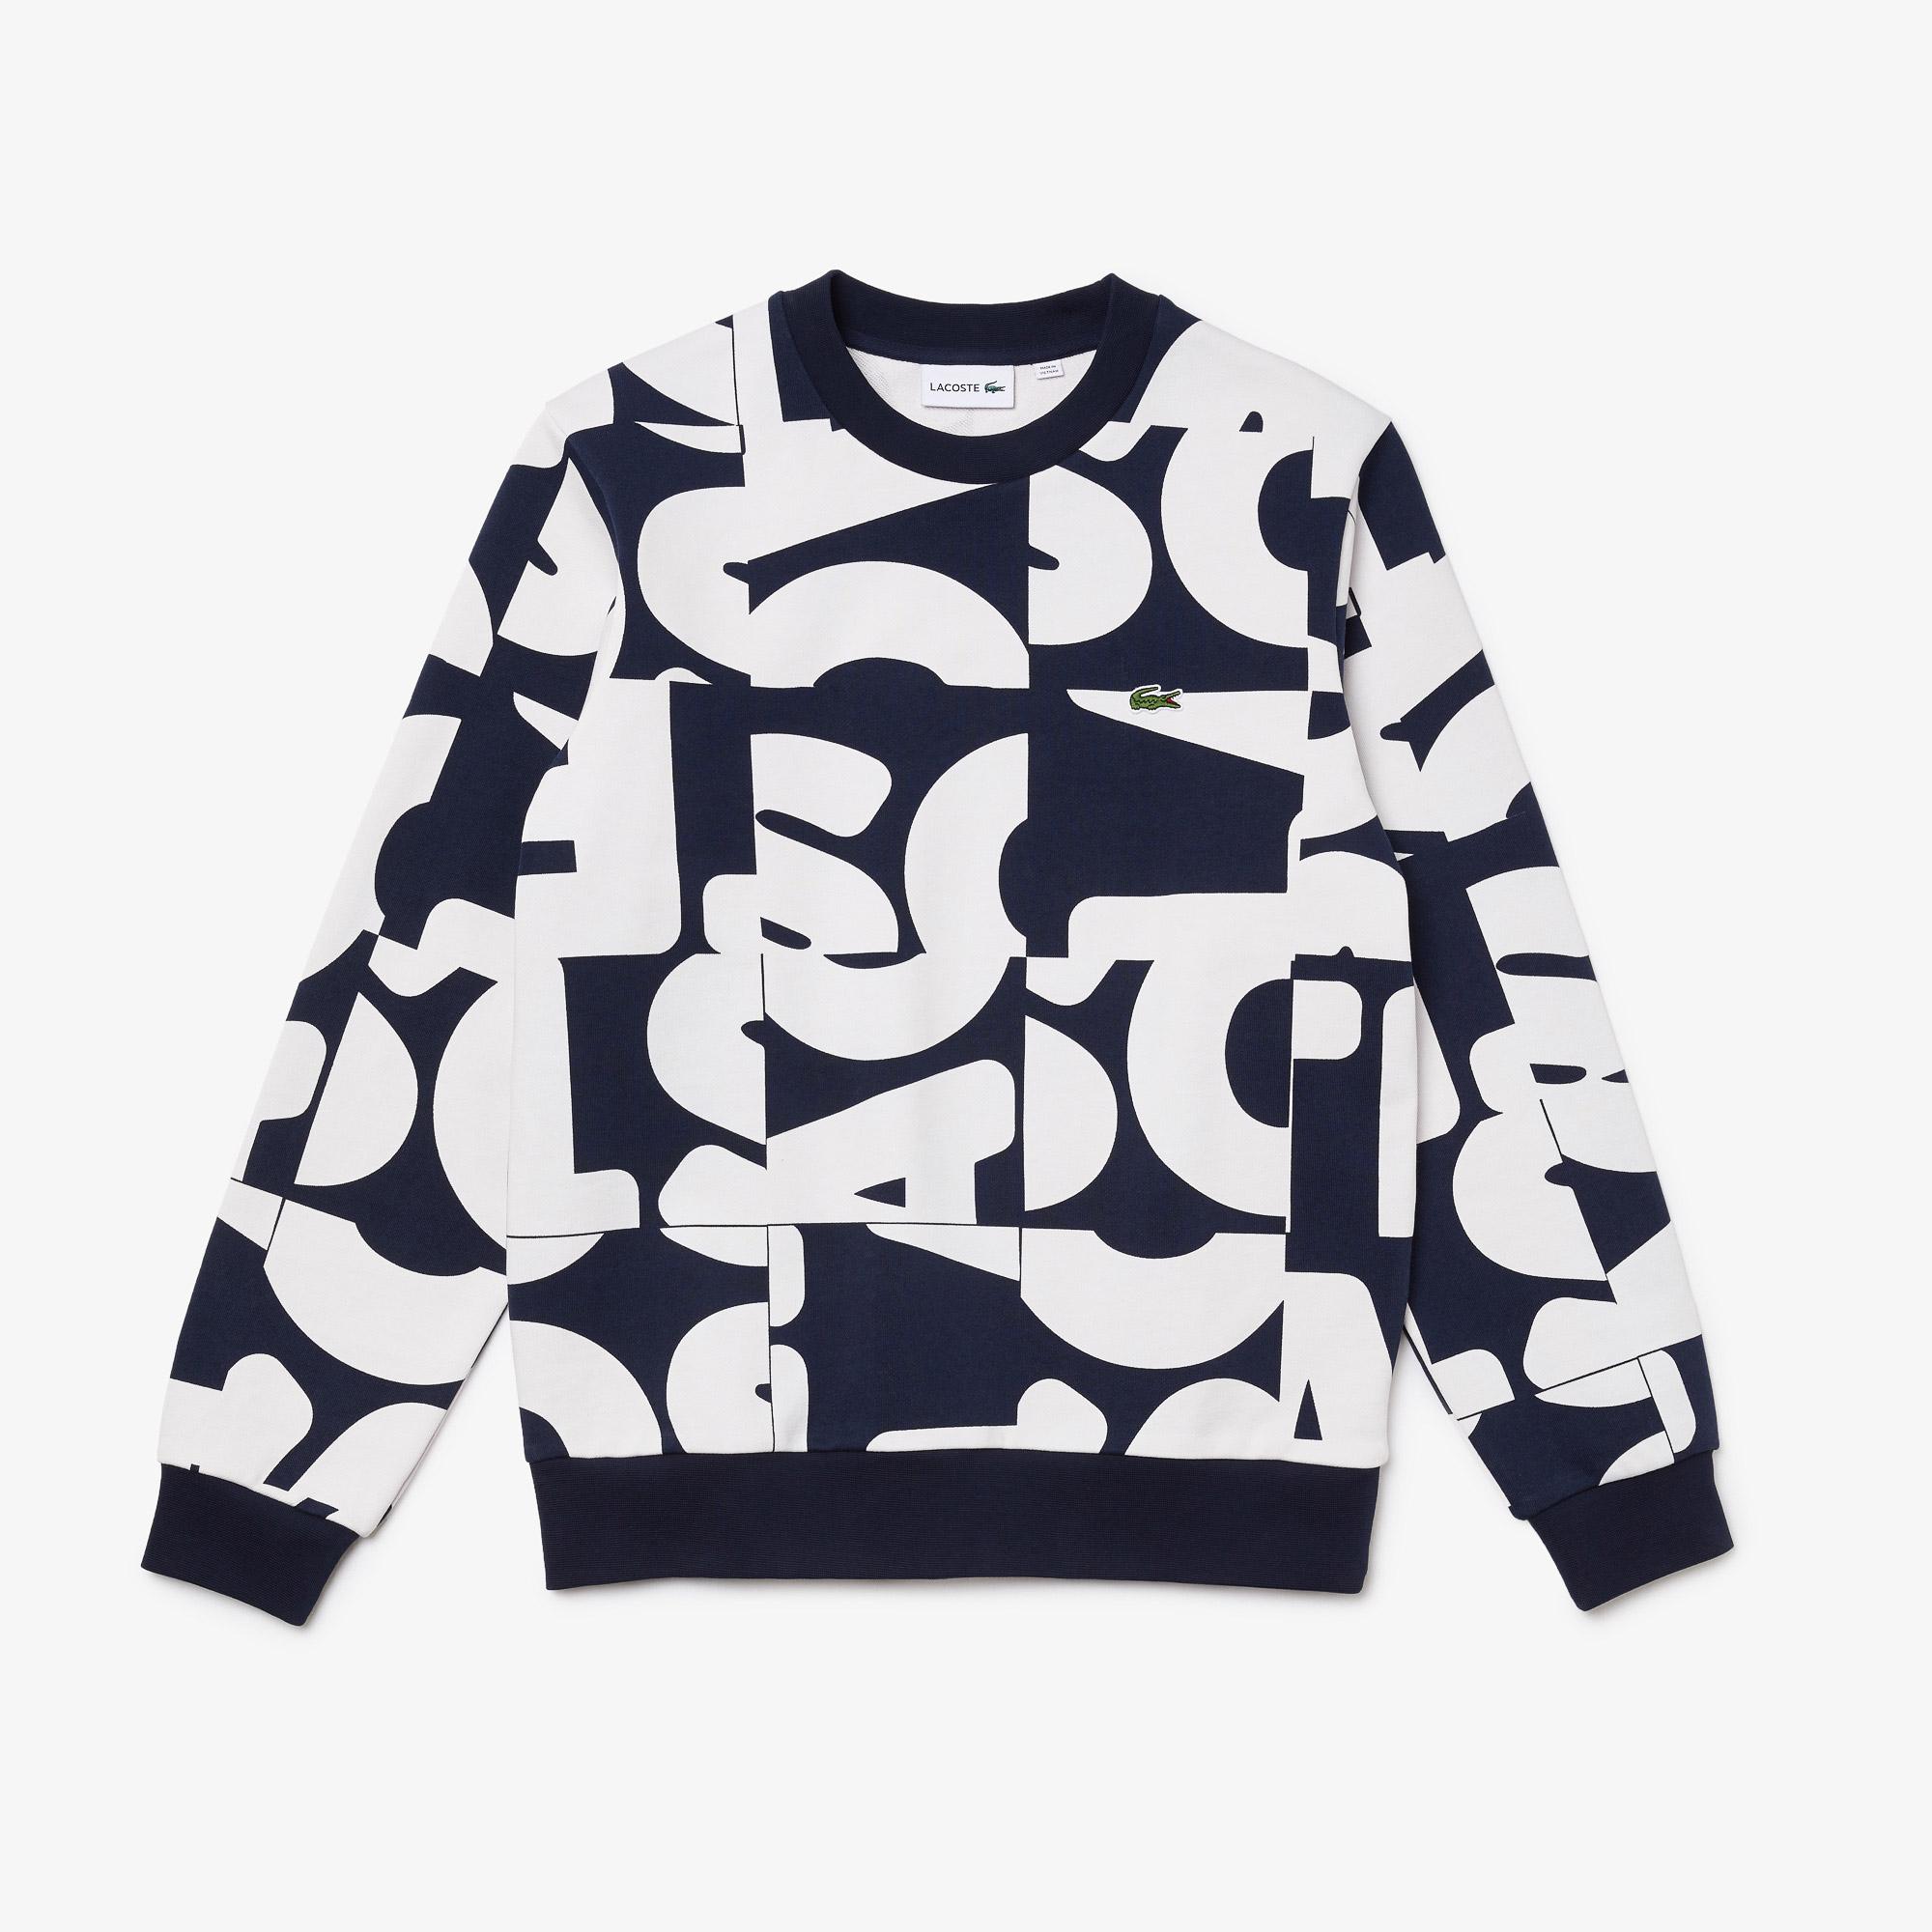 Lacoste Men's Heritage Graphic Print Crew Neck Cotton Fleece Sweatshirt